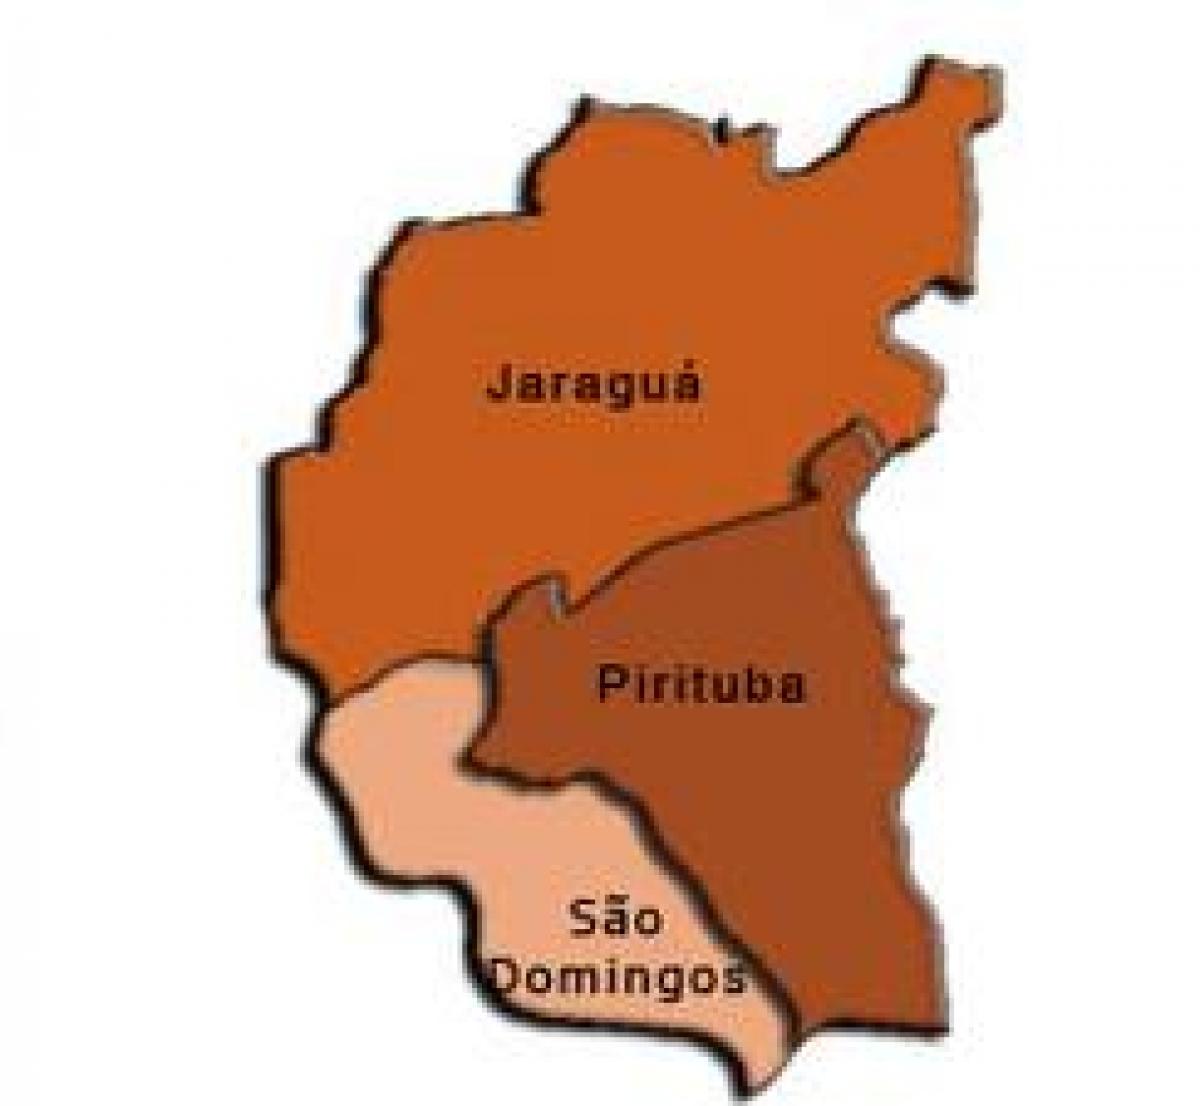 ನಕ್ಷೆ Pirituba-Jaraguá ಉಪ-ಪ್ರಿಫೆಕ್ಚರ್